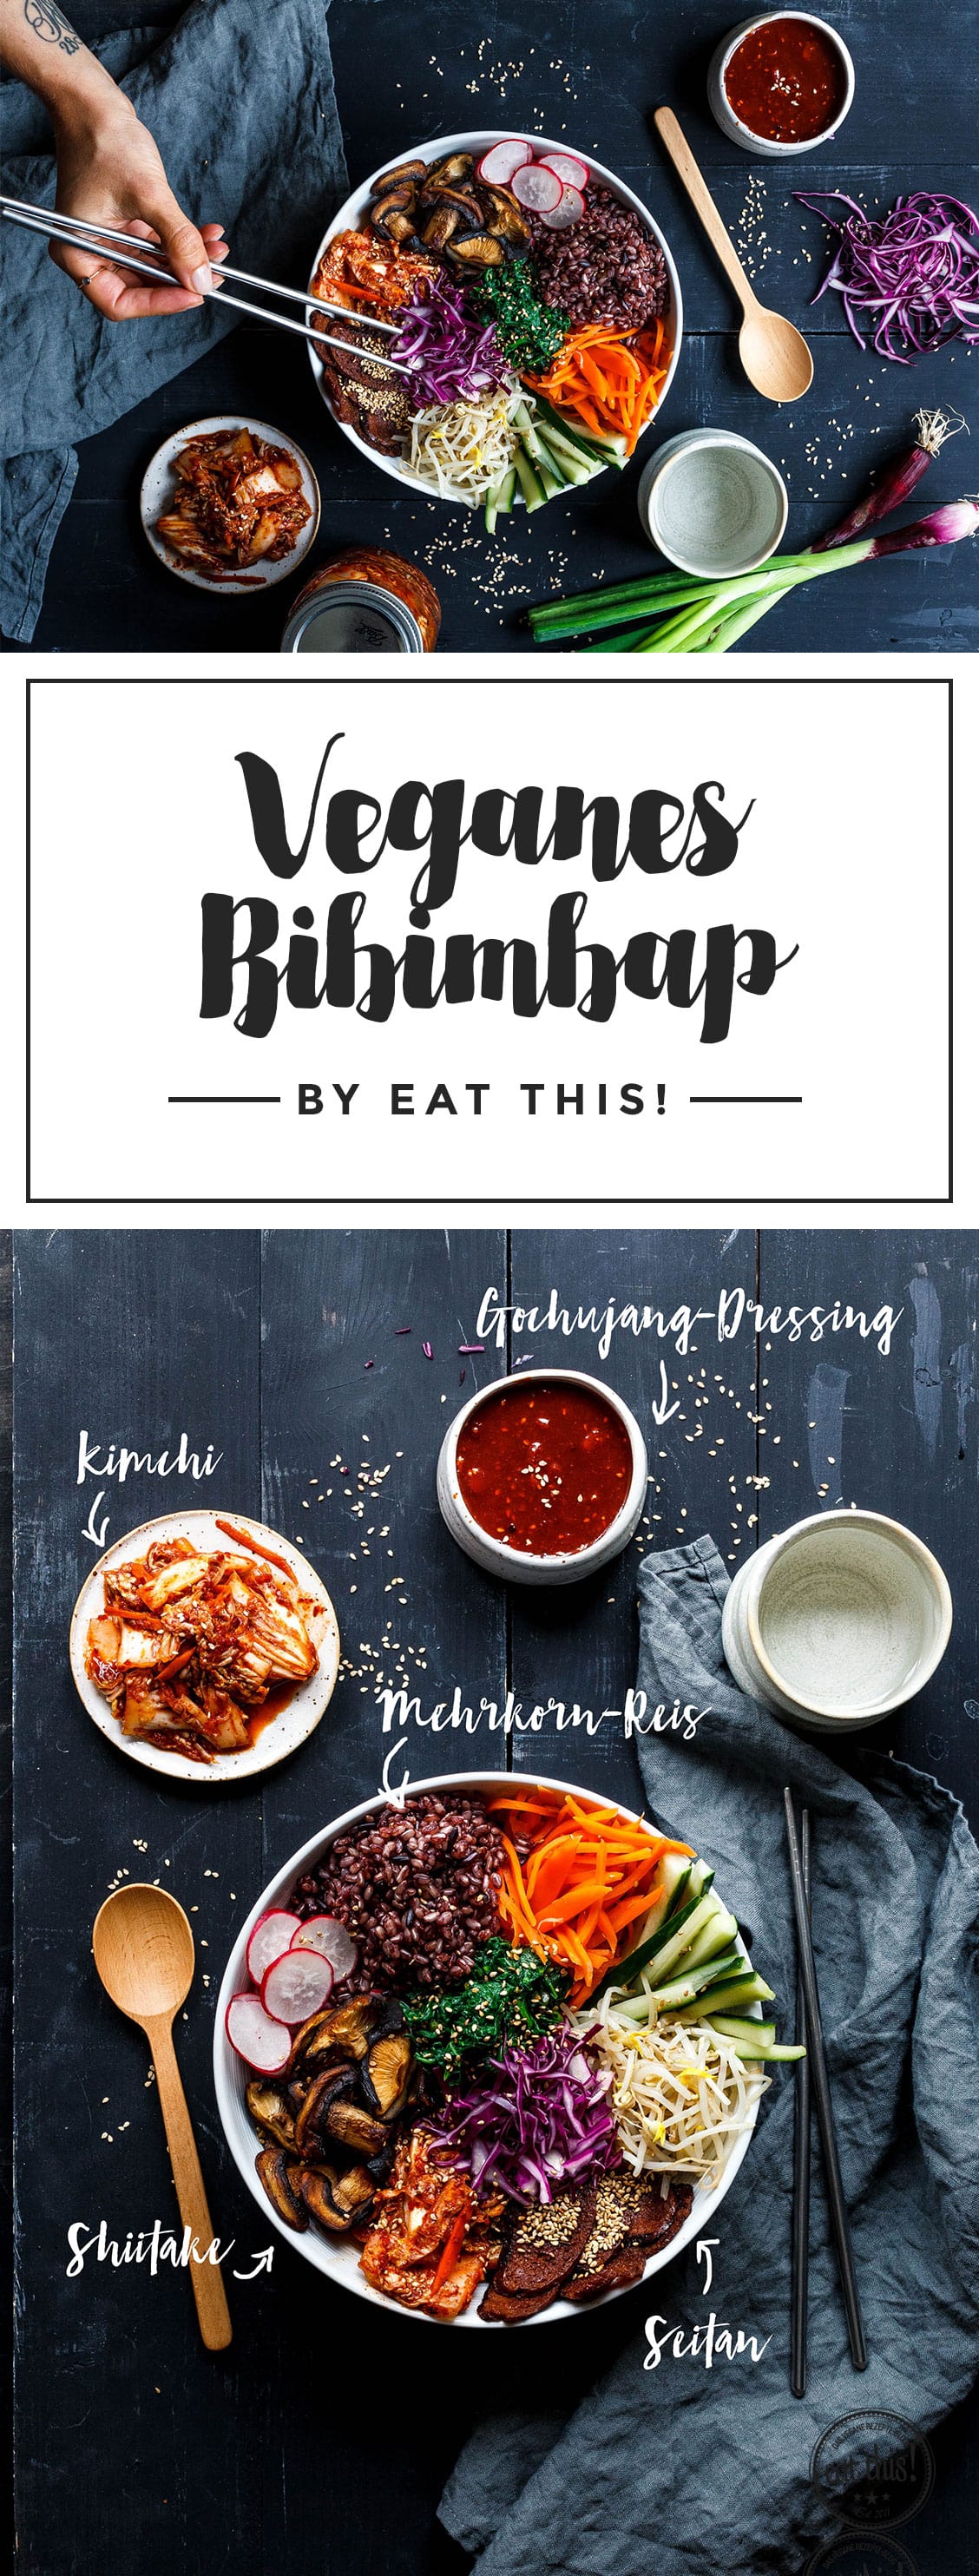 Du kennst Bibimbap noch nicht? Den Vorgänger aller Superfood-Bowls mit leckerem Mehrkorn-Reis, knackigem Gemüse und Kimchi musst du unbeding ausprobieren!